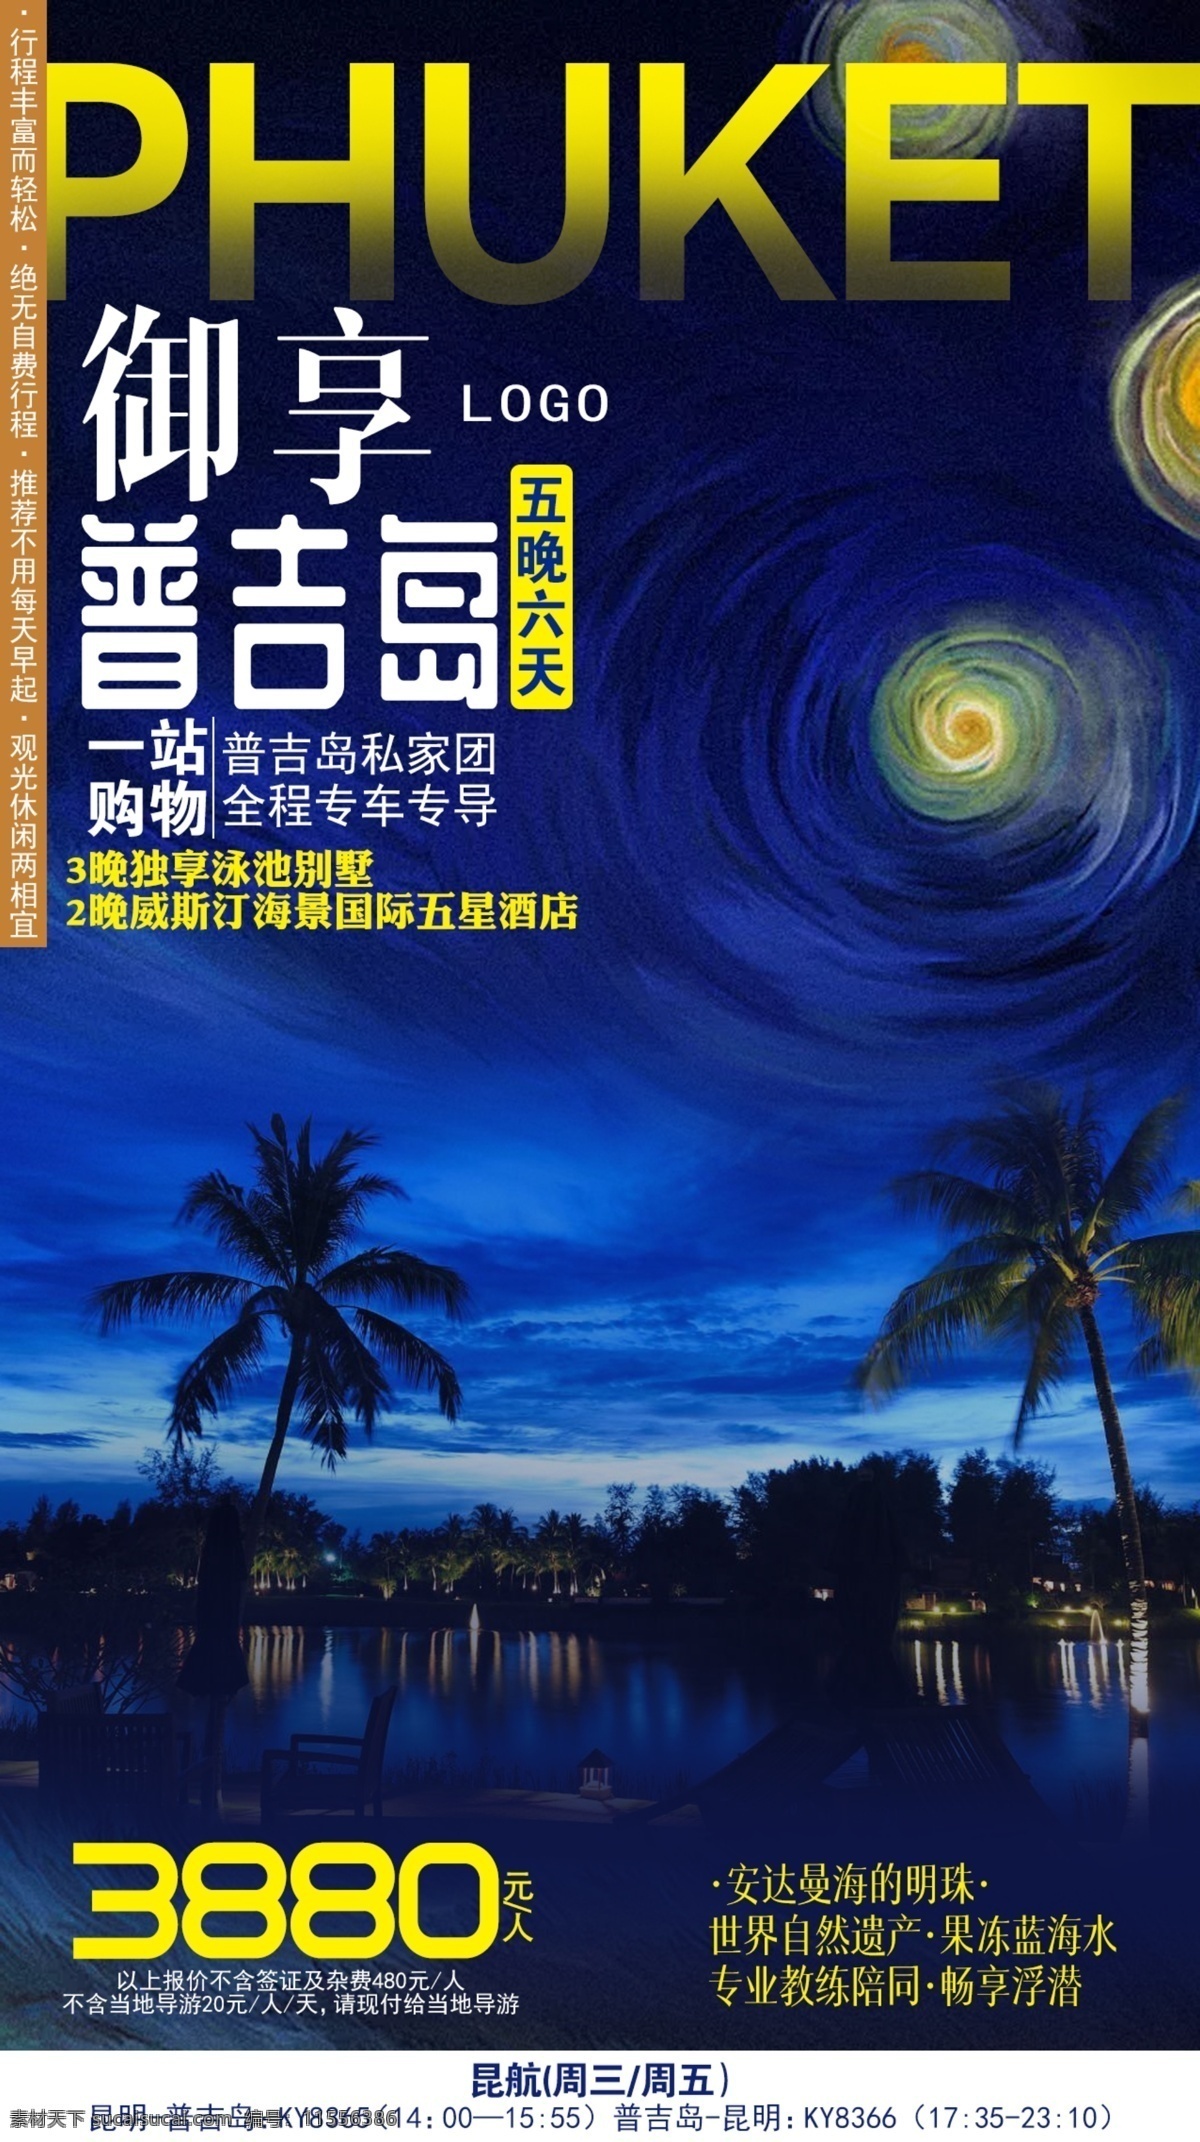 普吉岛 御享 海报 广宣 行走 蓝色 高端 旅游 旅行 爱好 个性 彩色